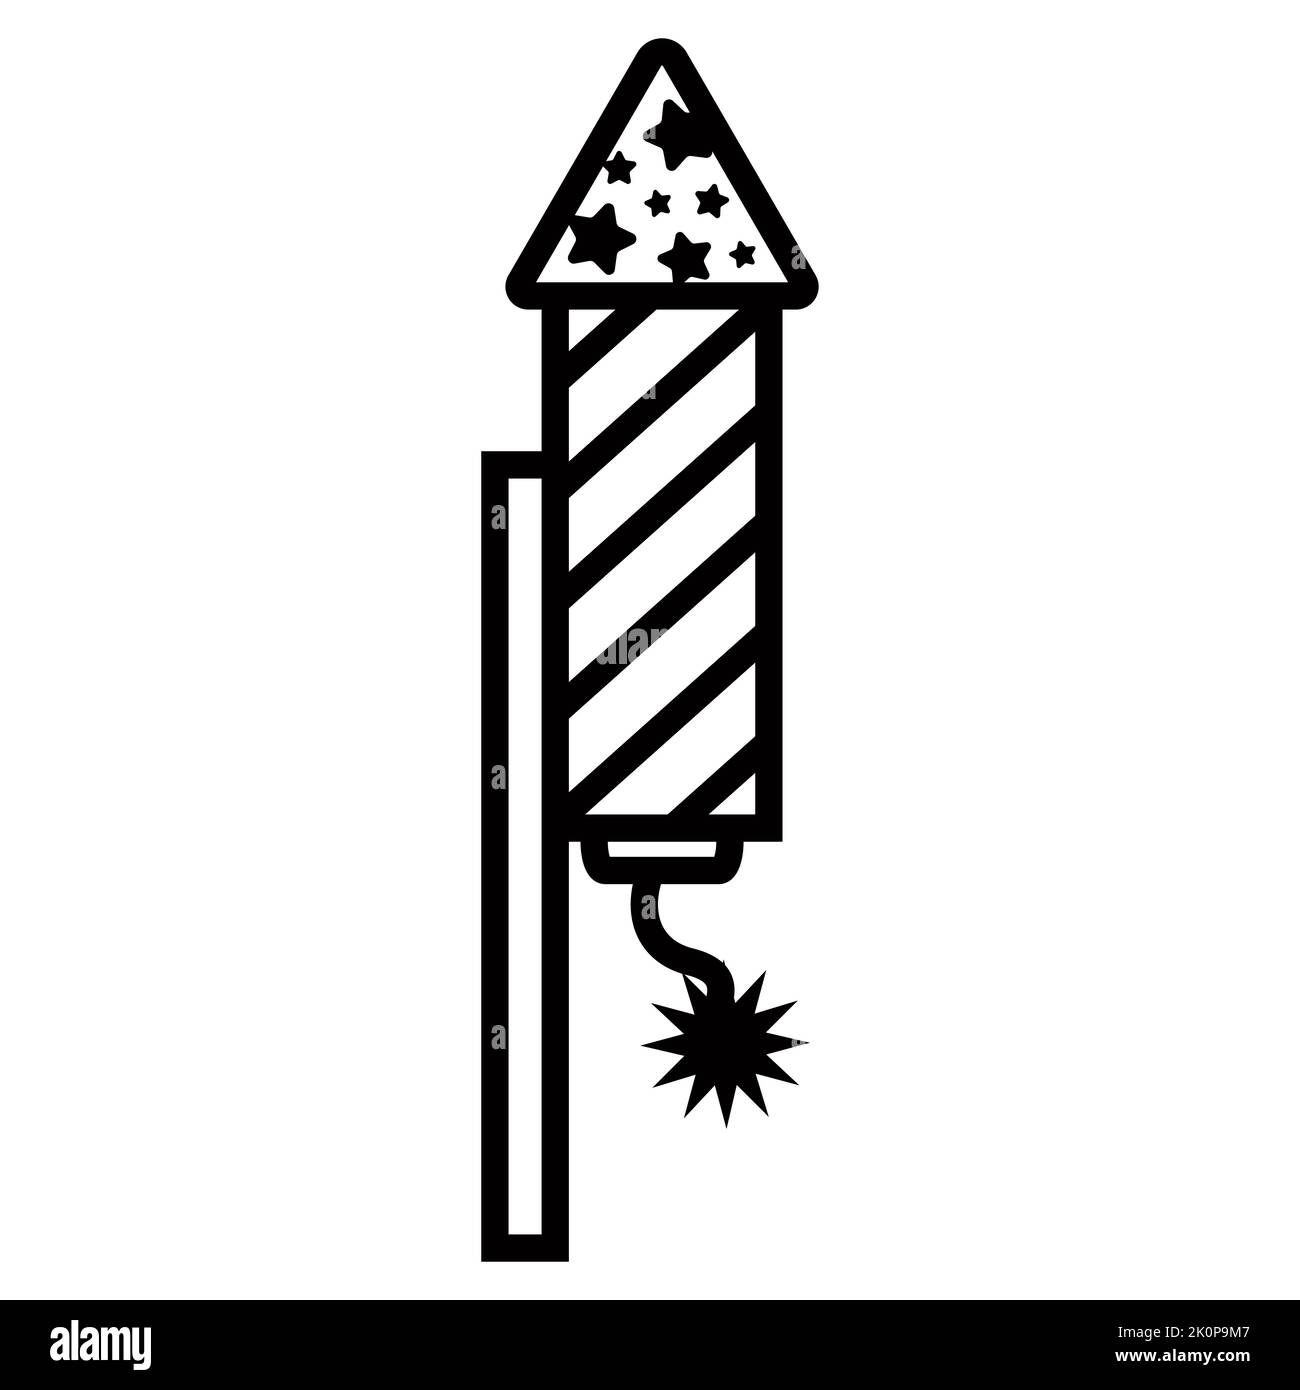 Schwarzes Symbol starten Feuerwerk auf einem Stock. Brennender Docht. Flache Vektor-Illustration. Stock Vektor